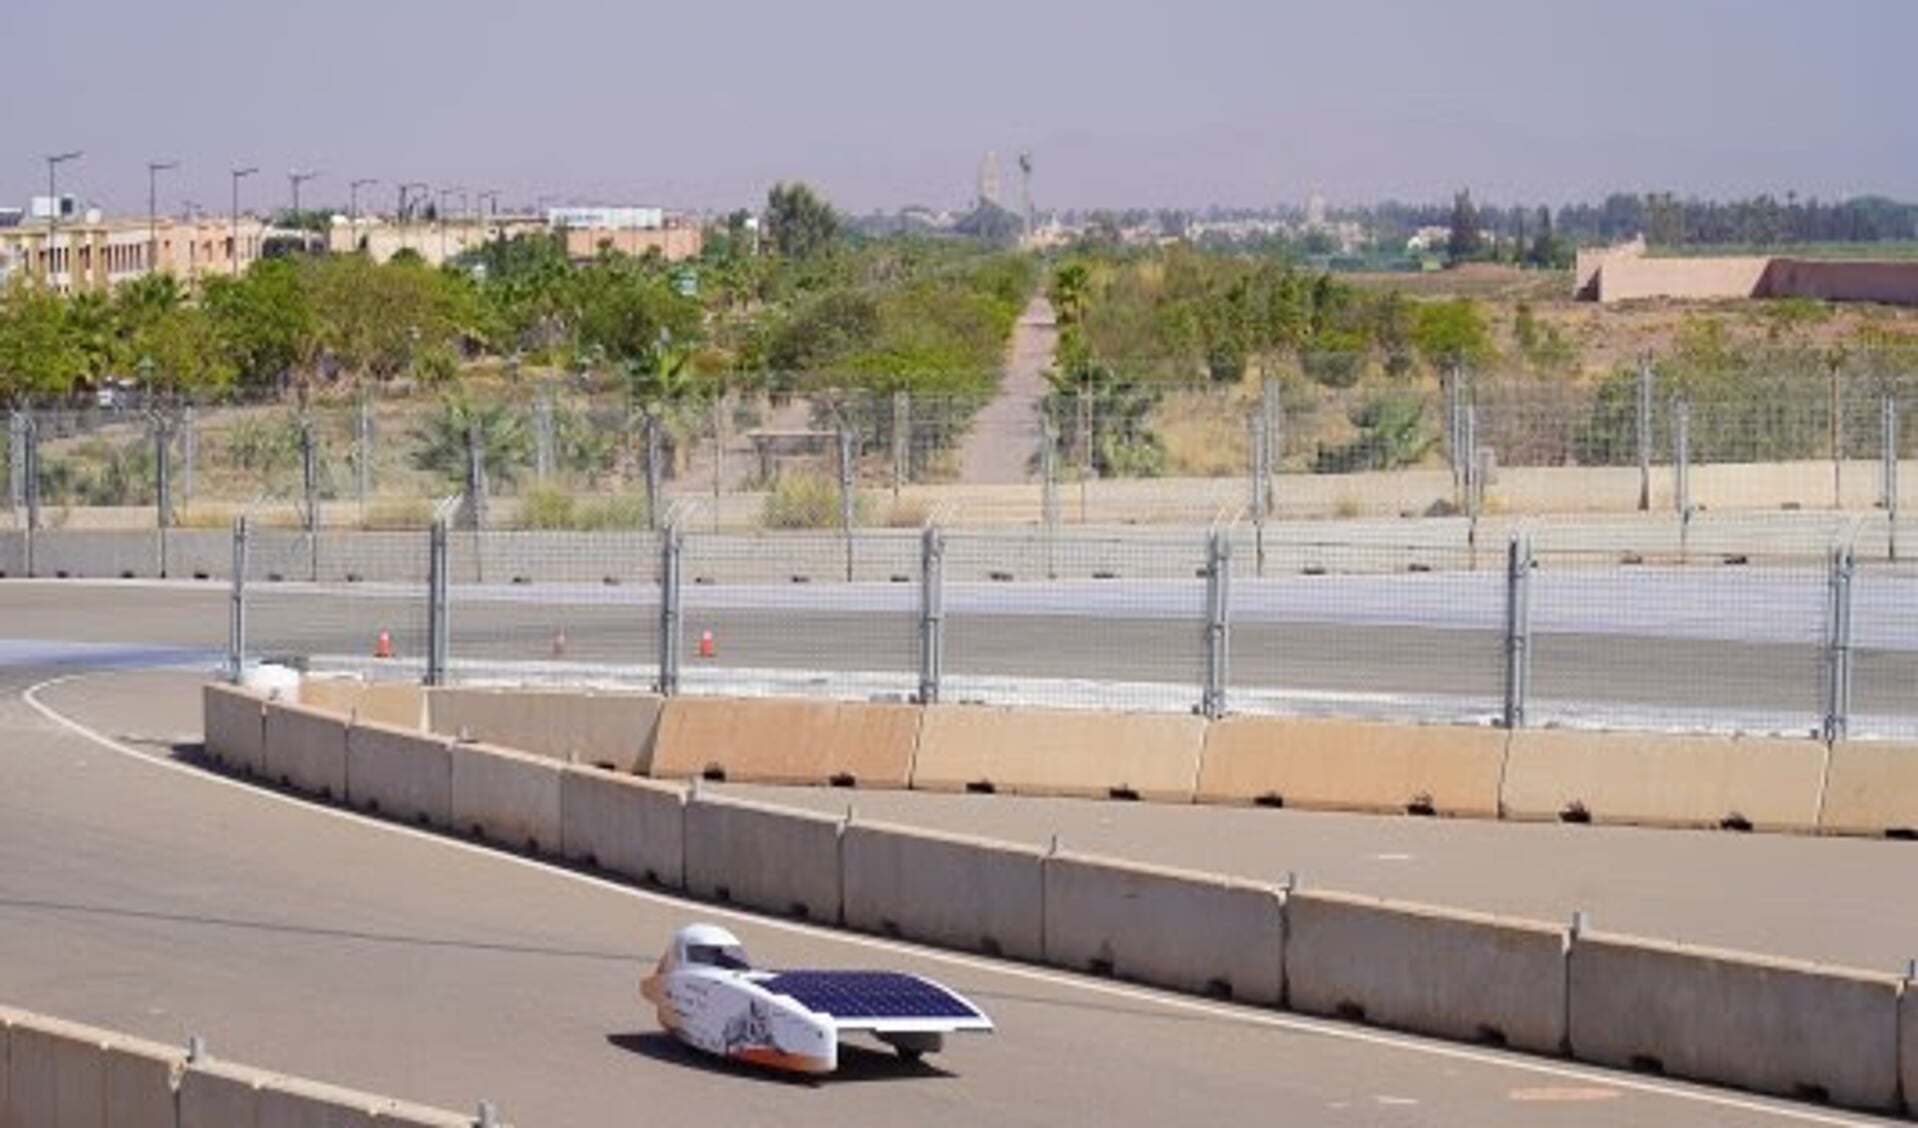 Nuna11 met op de achtergrond het centrum van Marrakesh. Foto: Vattenfall Solar Team